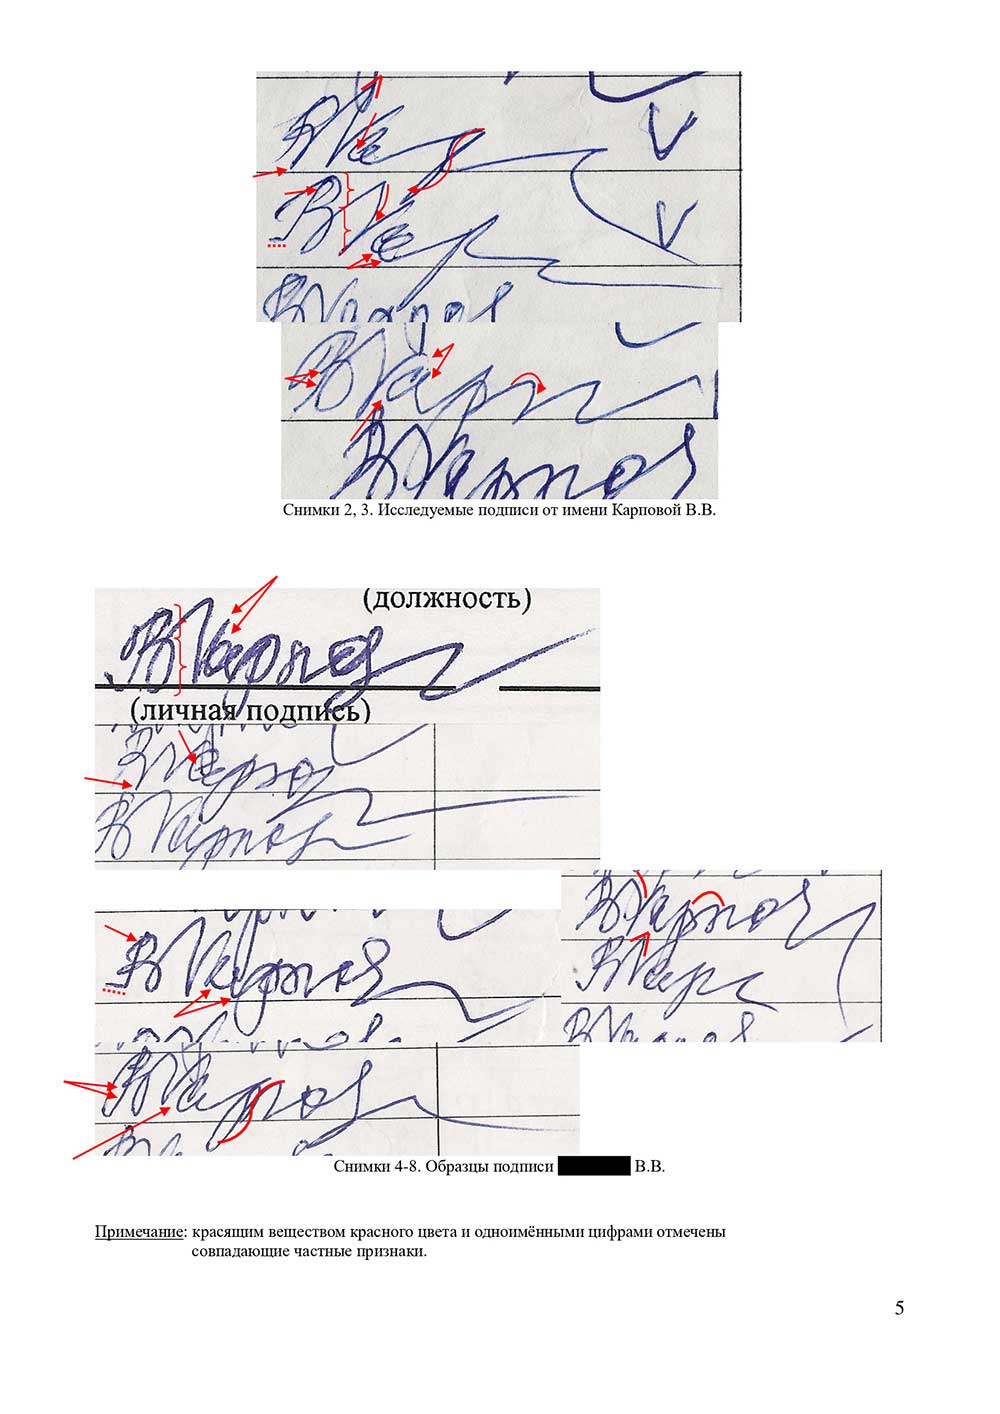 Судебная и досудебная почерковедческая экспертиза документов. Графологическая экспертиза почерка, подписи в Барнауле